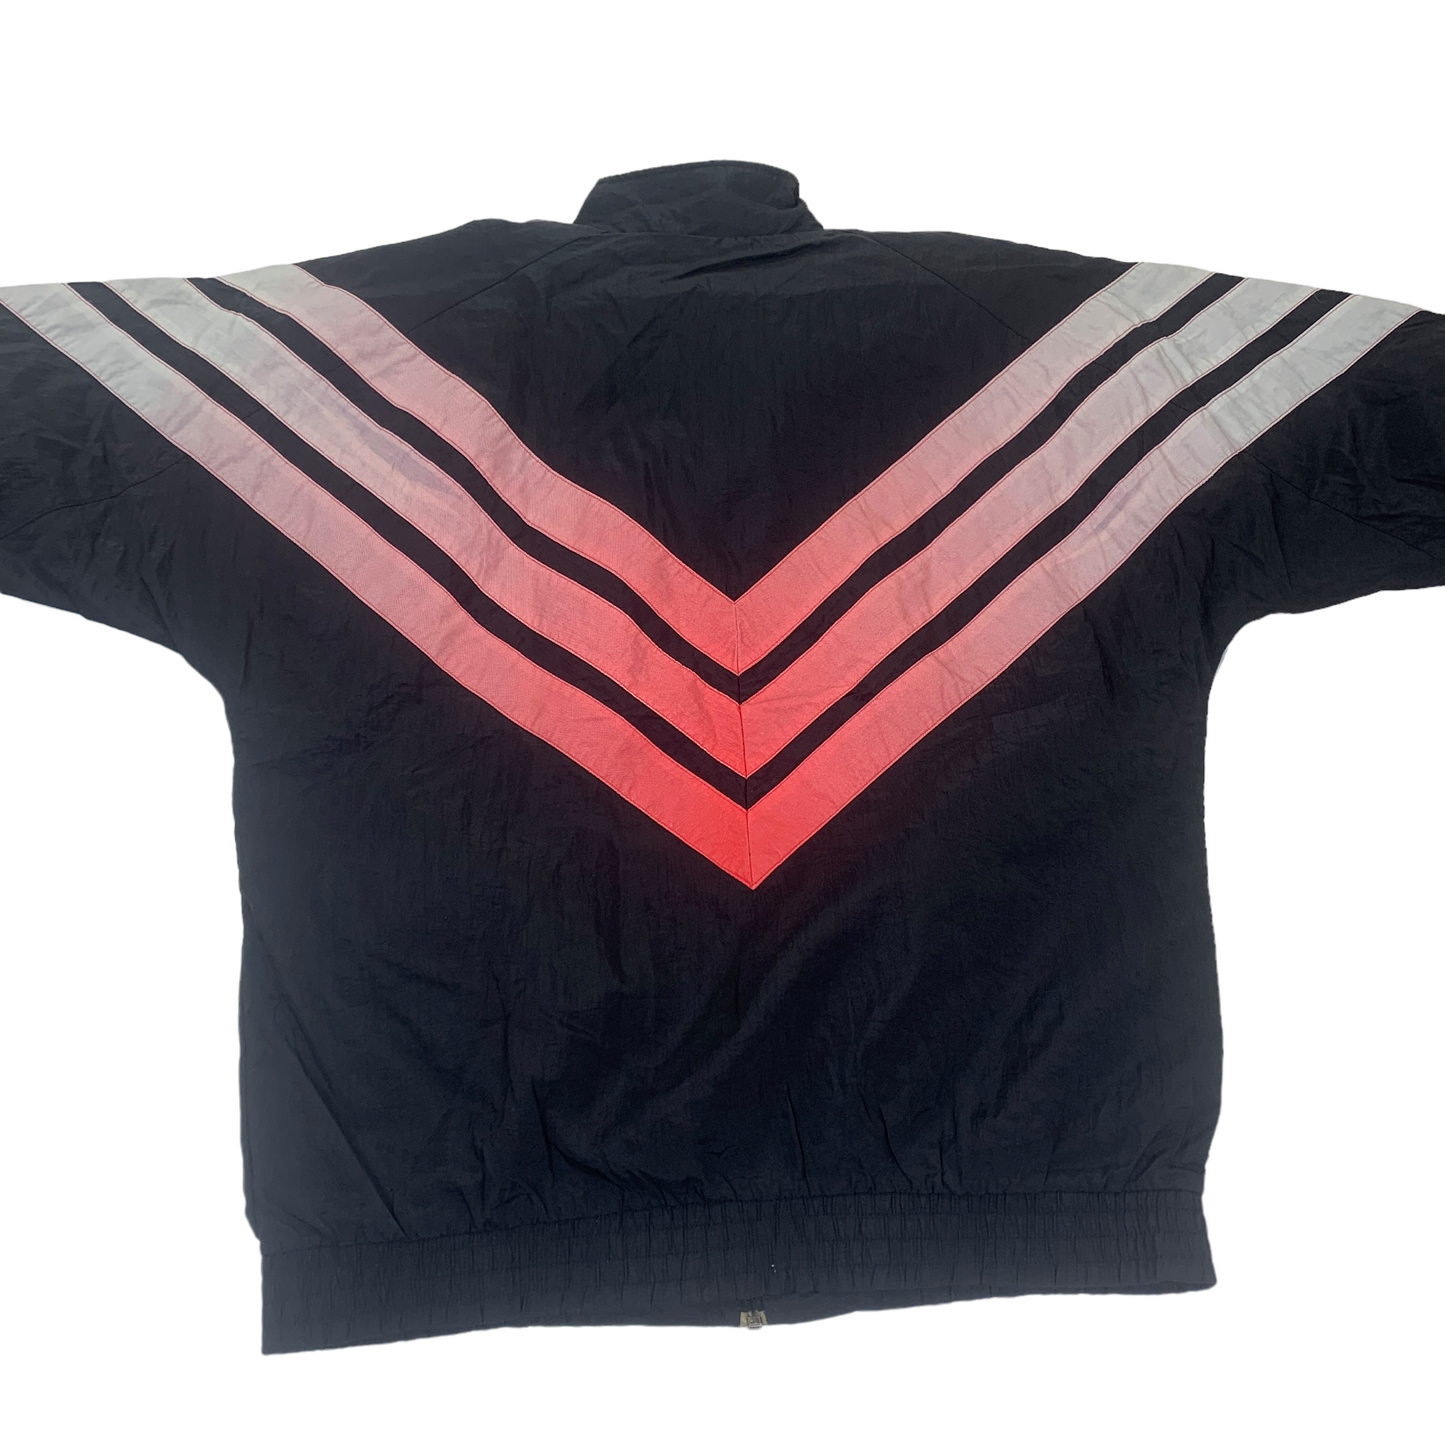 Vintage Adidas Track Jacket / Trainings Top